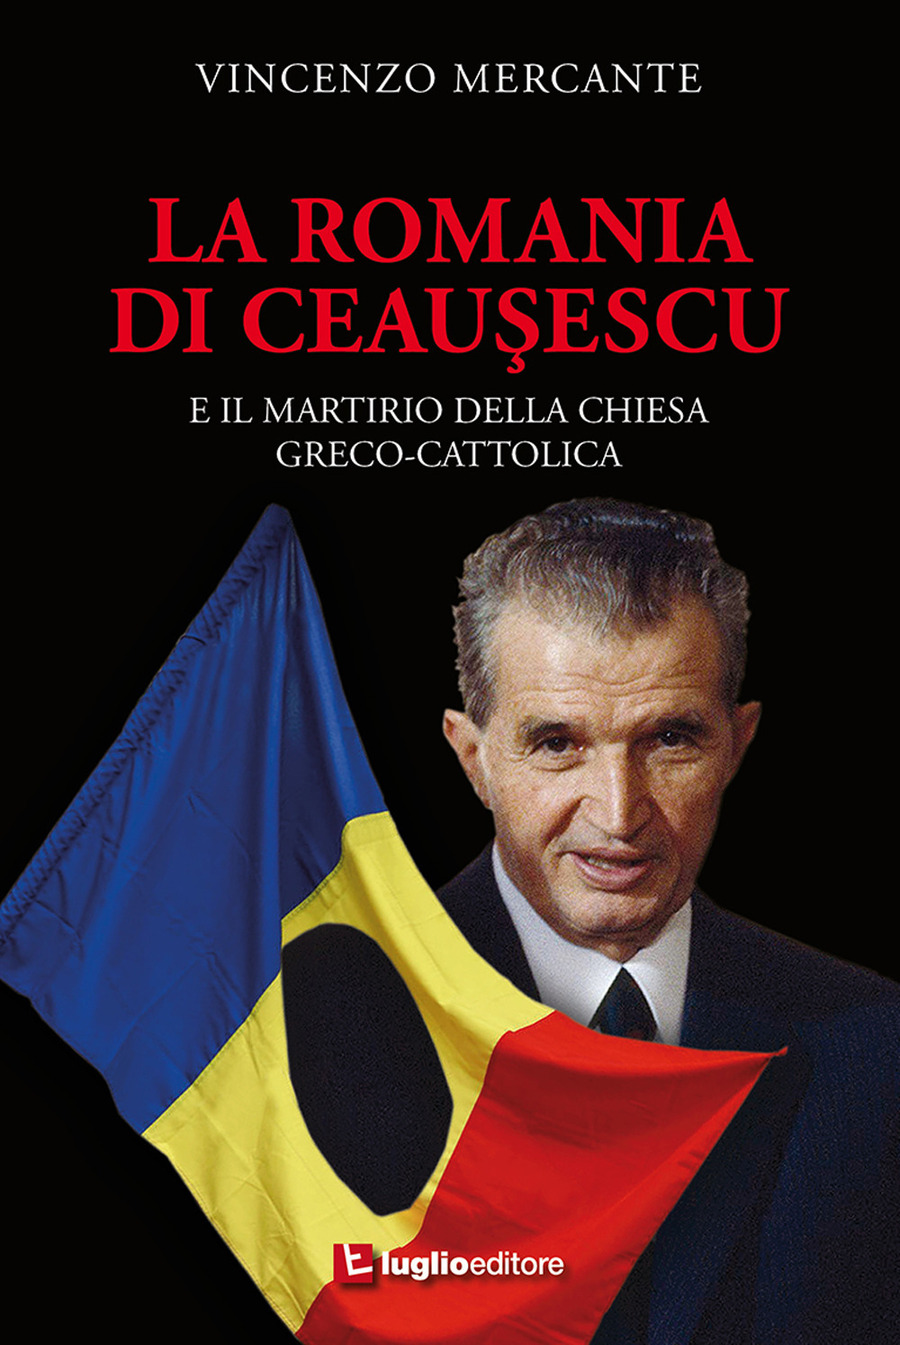 La Romania di Ceauşescu. E il martirio della Chiesa Greco-Cattolica